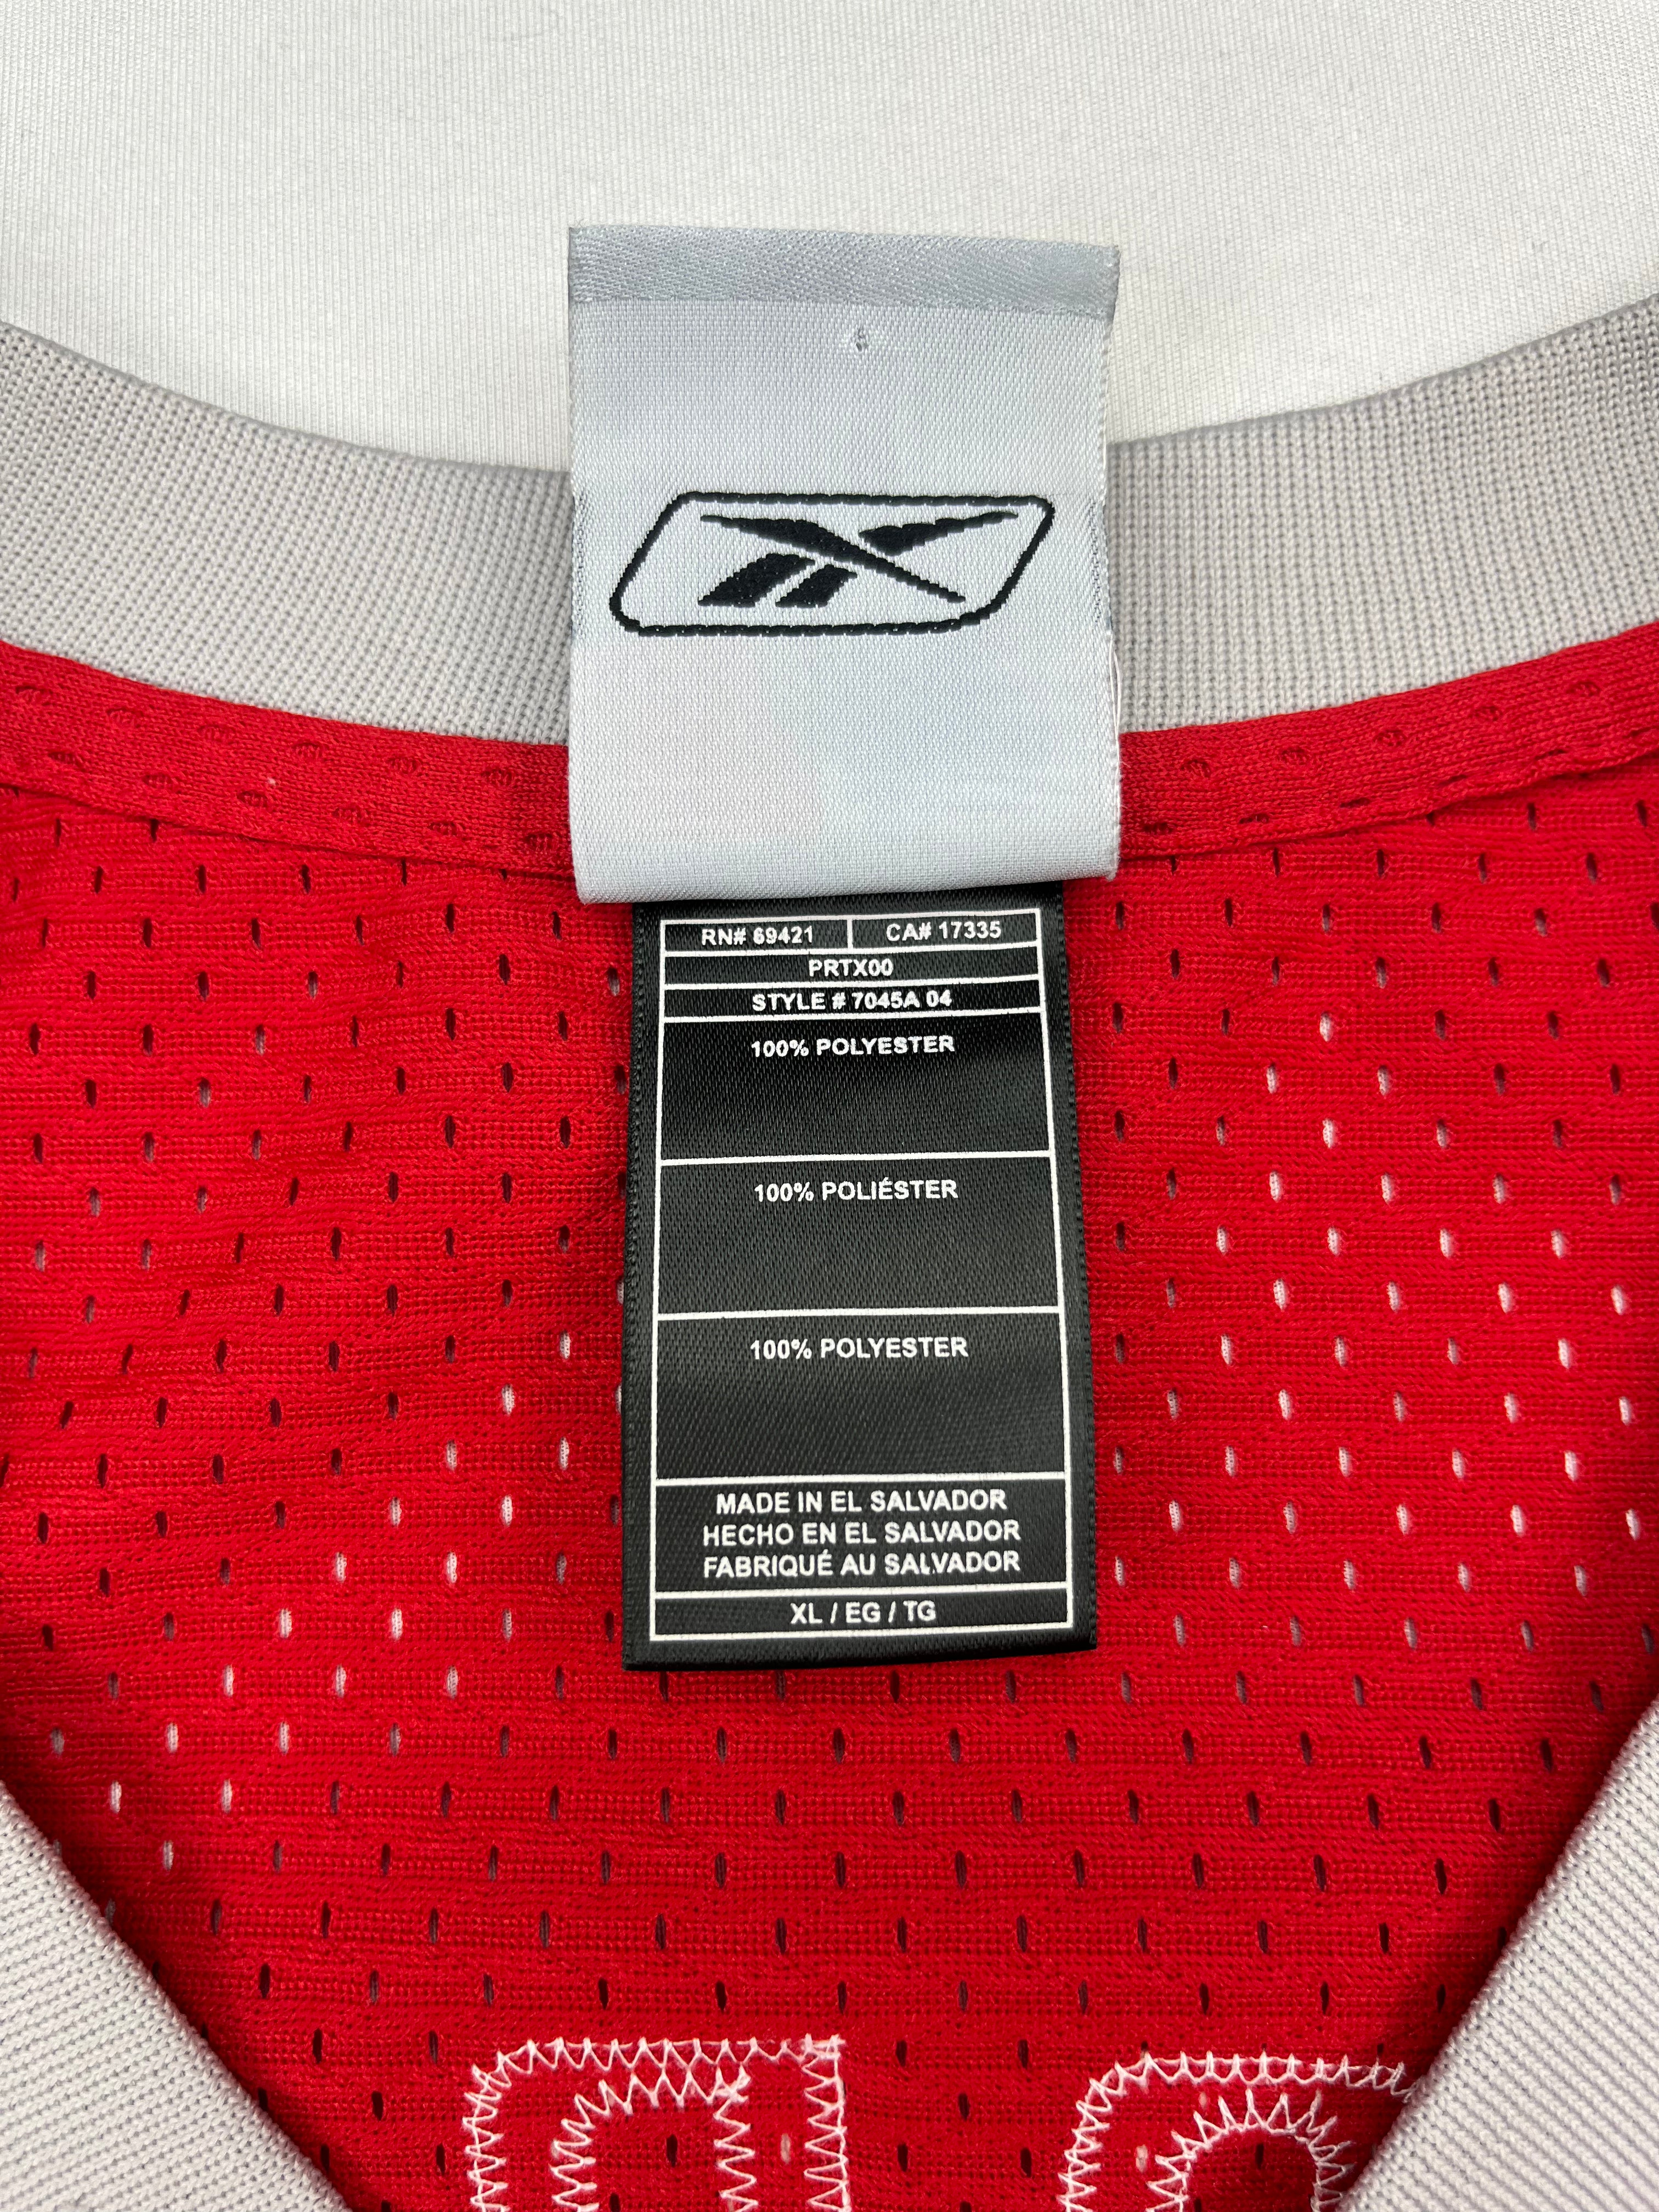 2003/06 Camiseta de carretera Reebok de los Houston Rockets McGrady # 1 (XL) 9/10